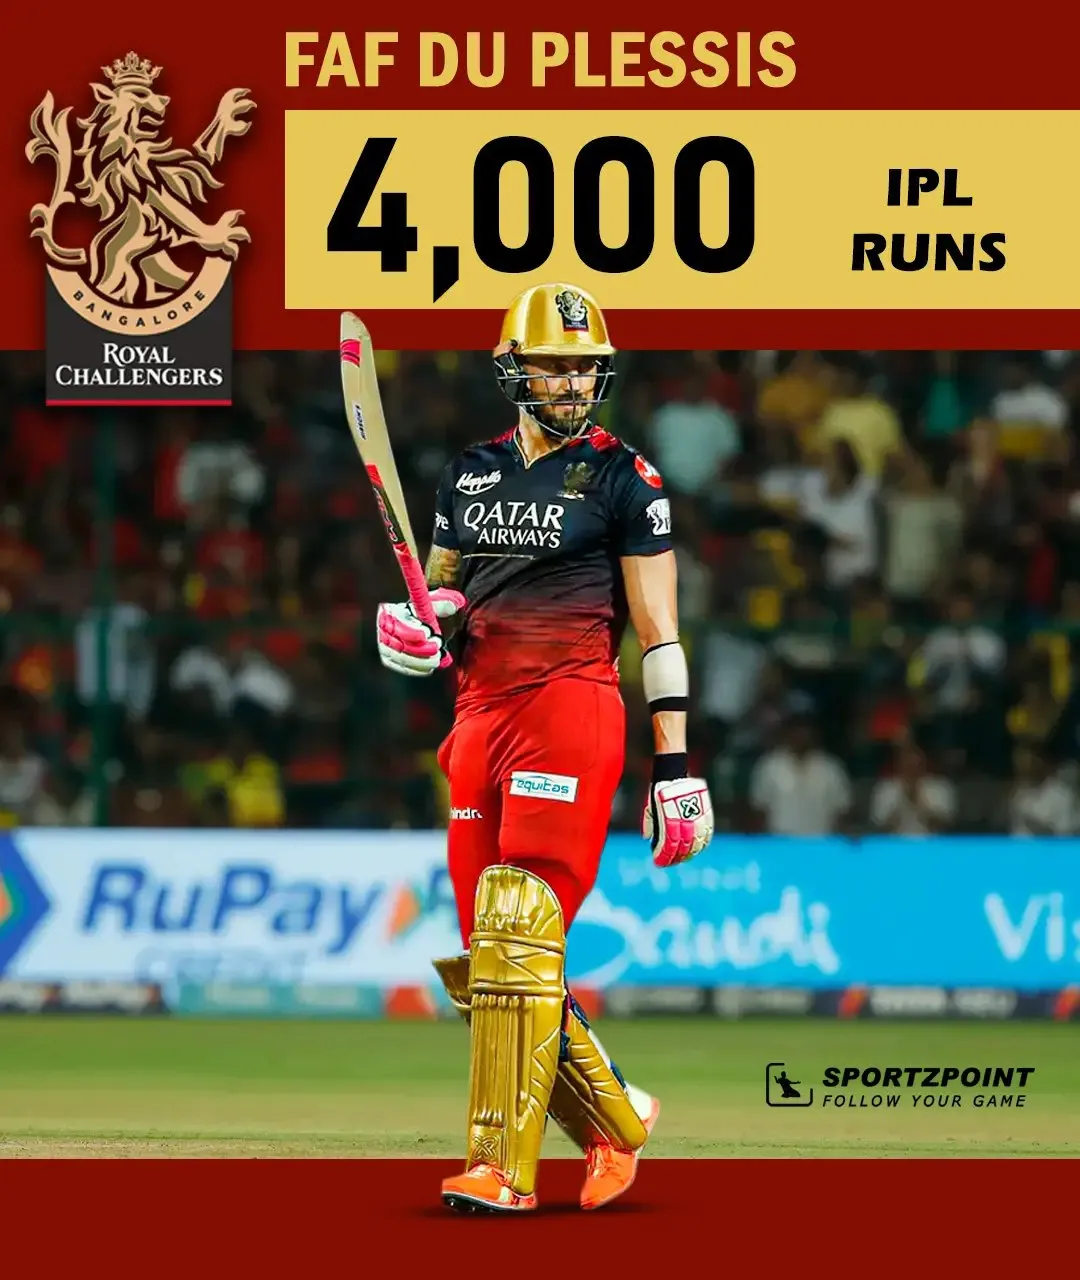 Faf du Plessis: Faf du Plessis completes 4000 runs in IPL | Sportz Point